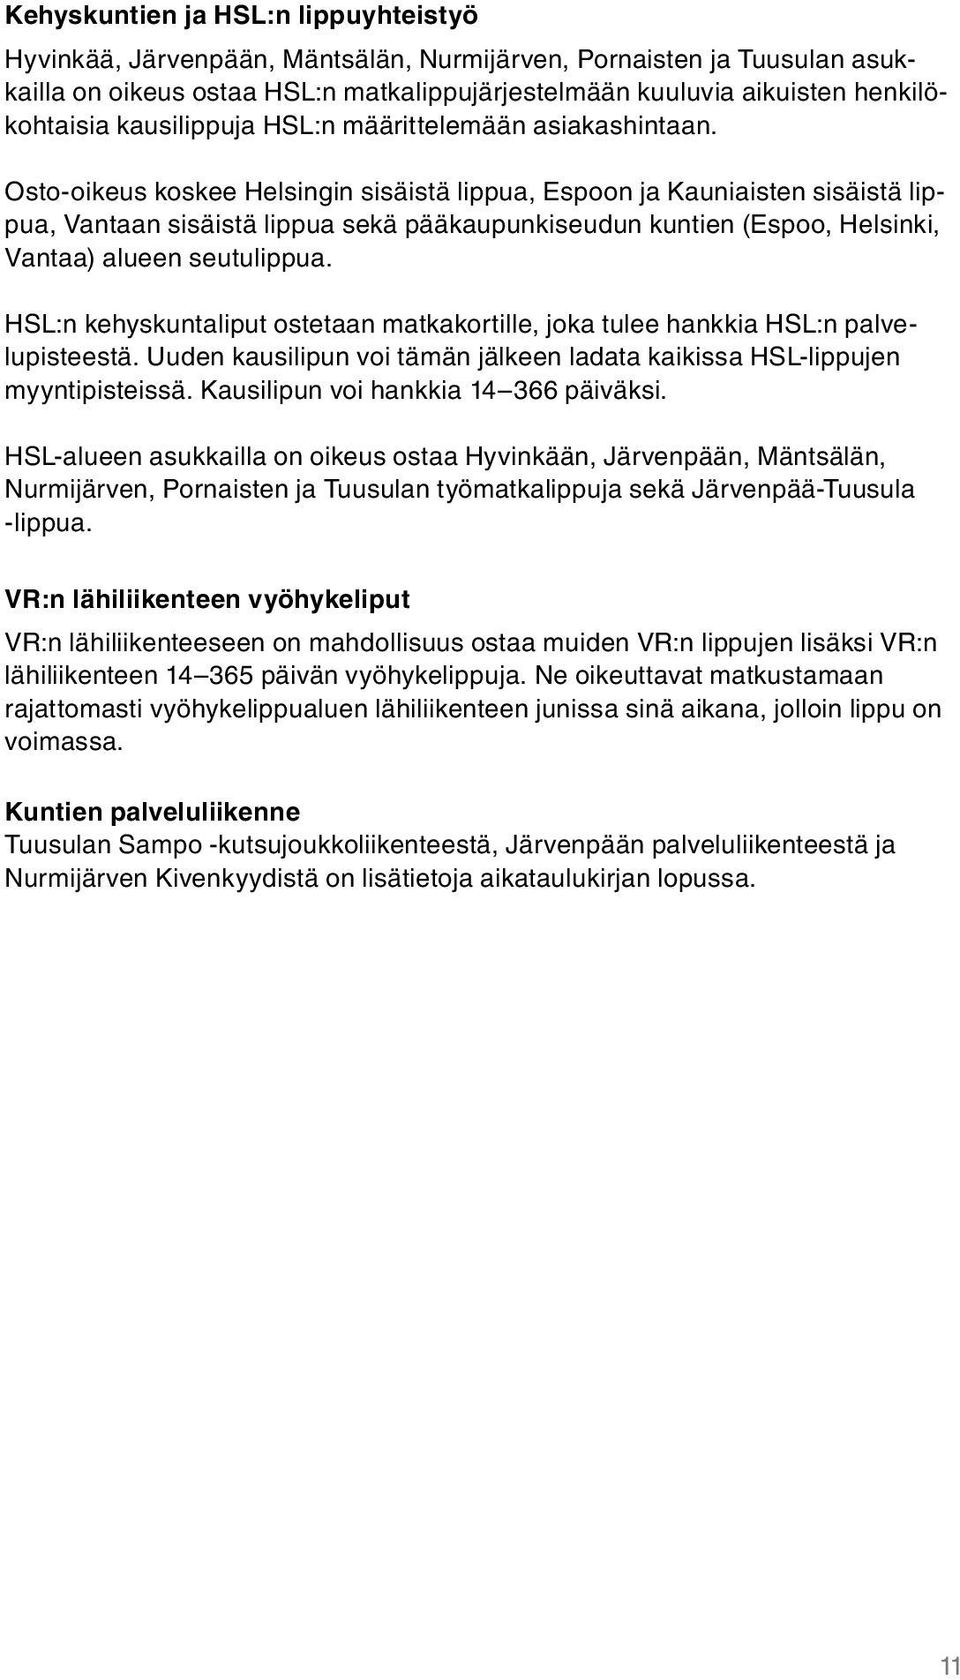 Osto-oikeus koskee Helsingin sisäistä lippua, Espoon ja Kauniaisten sisäistä lippua, Vantaan sisäistä lippua sekä pääkaupunkiseudun kuntien (Espoo, Helsinki, Vantaa) alueen seutulippua.